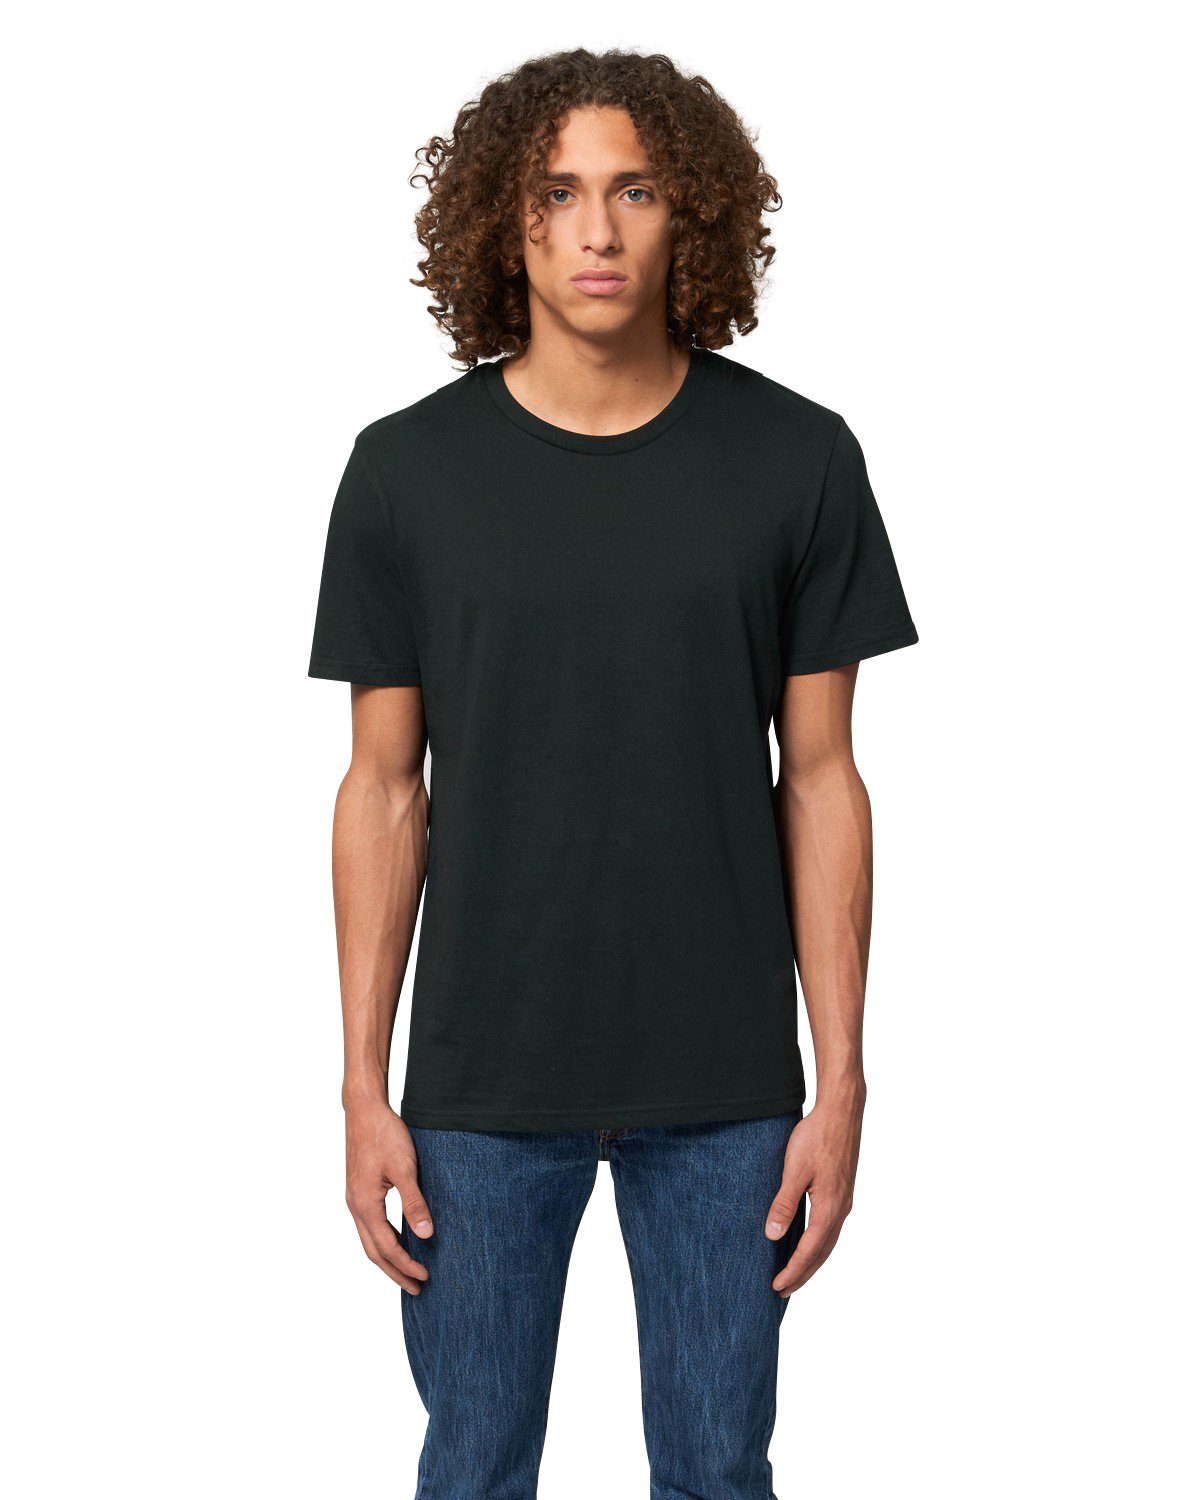 Hilltop T-Shirt Hochwertiges Unisex T-Shirt aus 100% Bio-Baumwolle Black